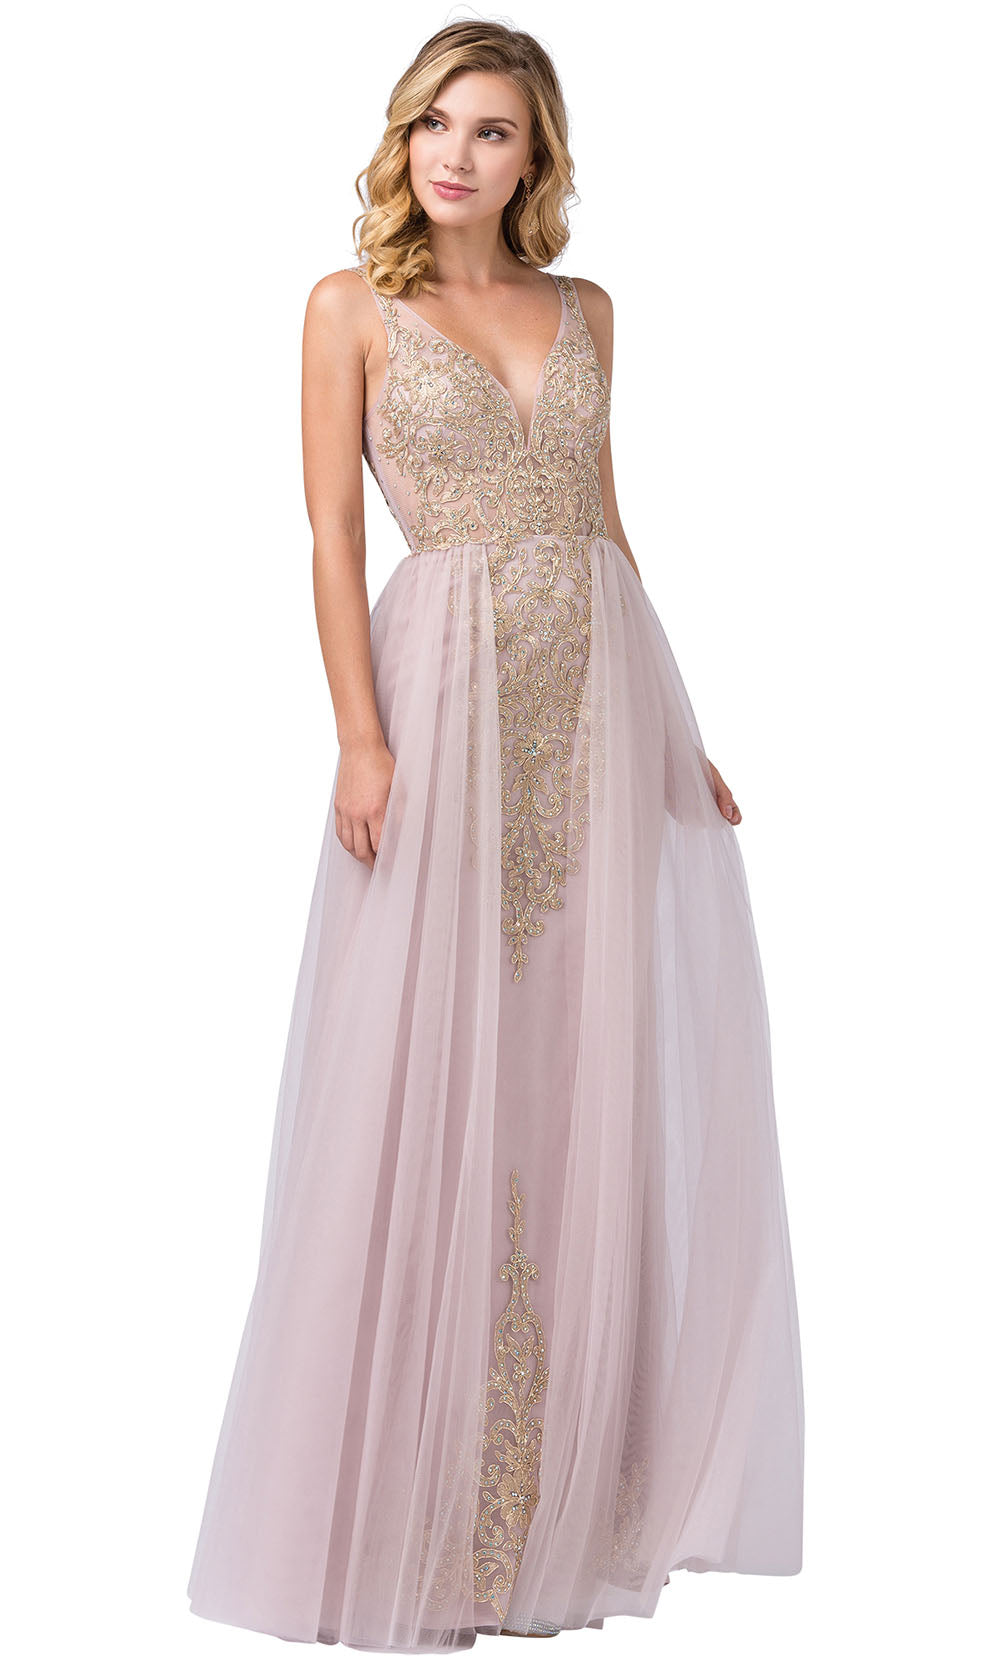 Dancing Queen - 2525 Appliqued Sheer Overskirt Dress In Pink